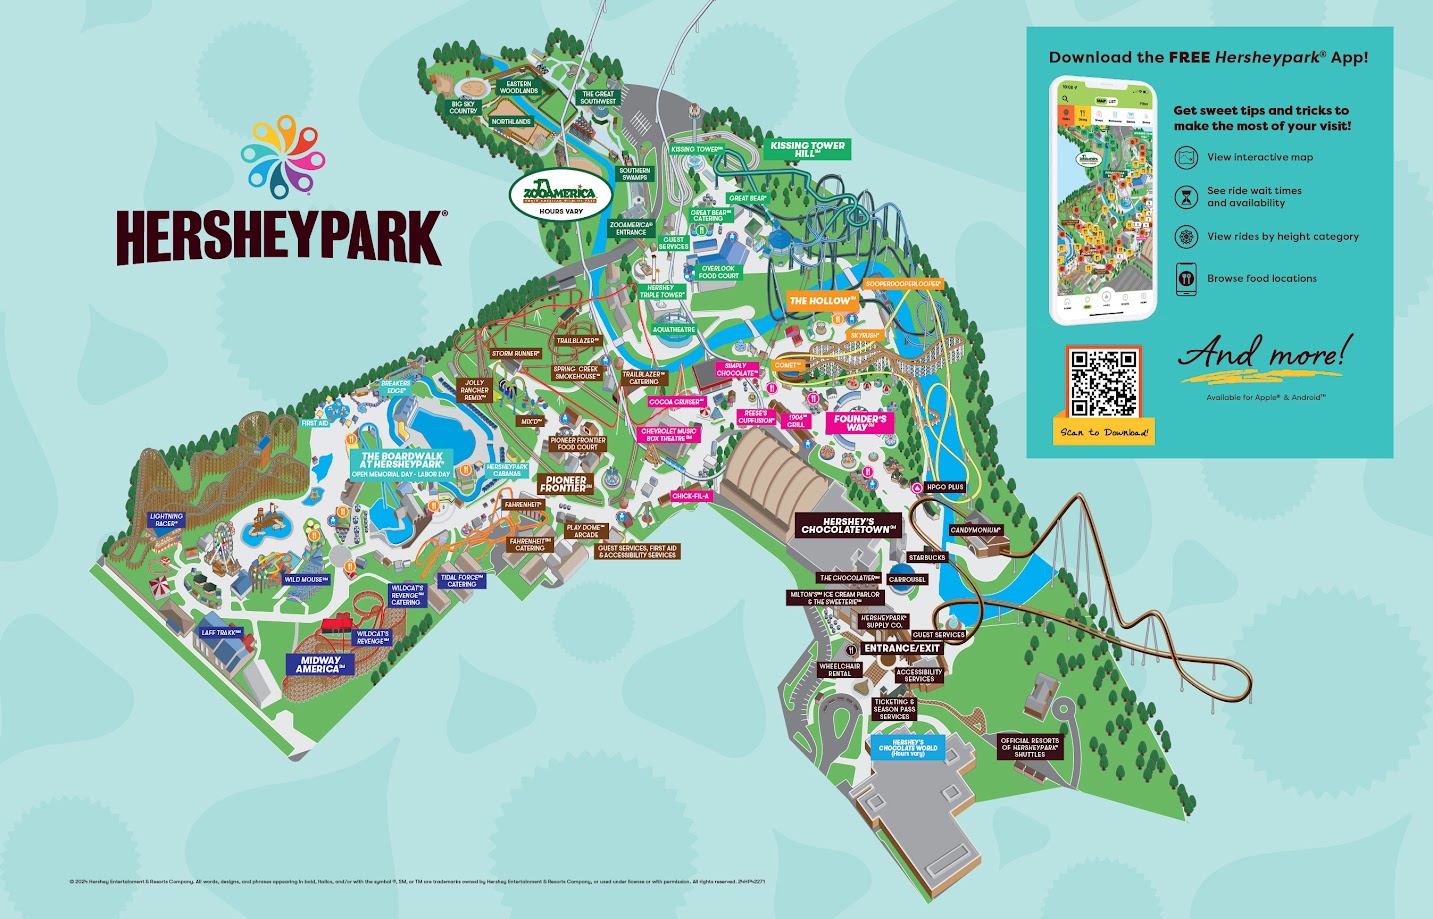 Map of Hersheypark